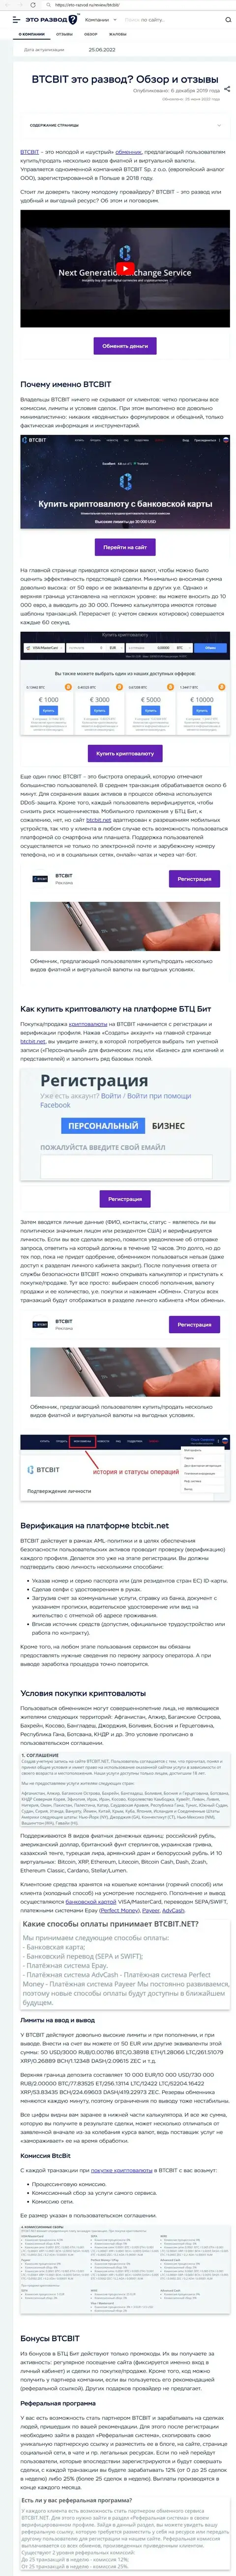 Обзор деятельности и условия для предоставления услуг обменки BTCBit Net в публикации на портале Eto-Razvod Ru